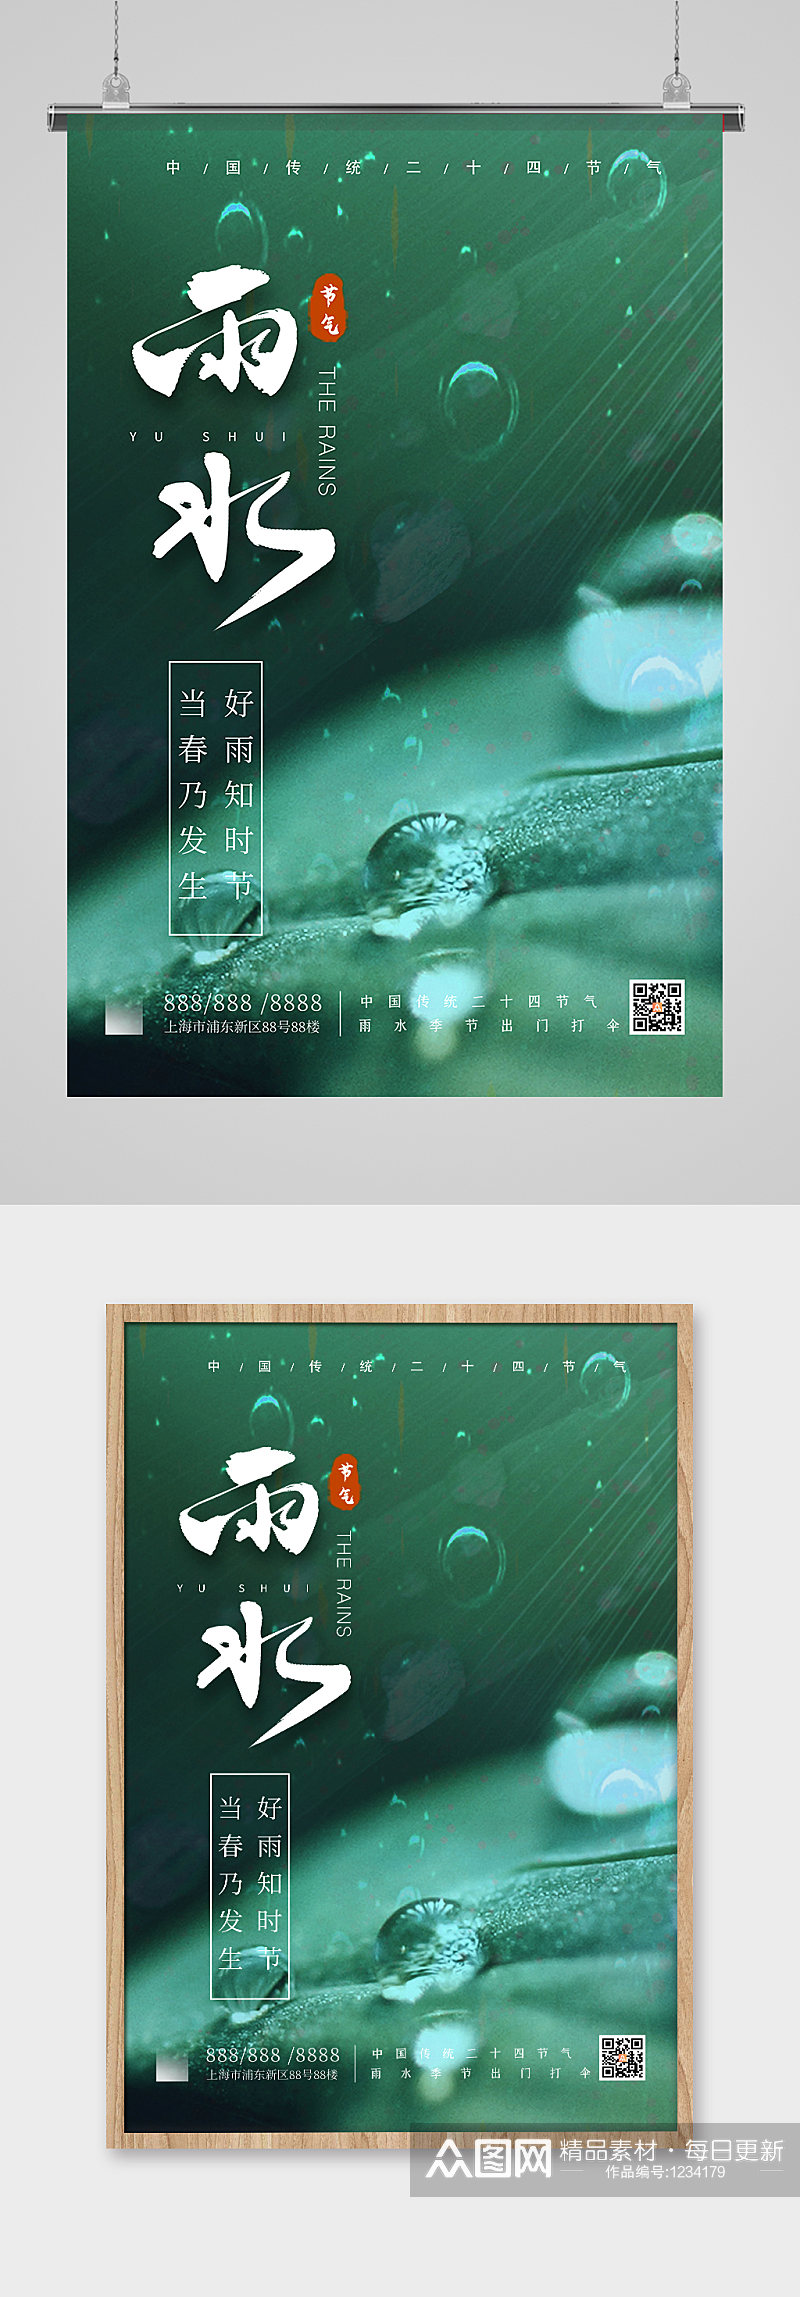 24节气之雨水宣传海报素材